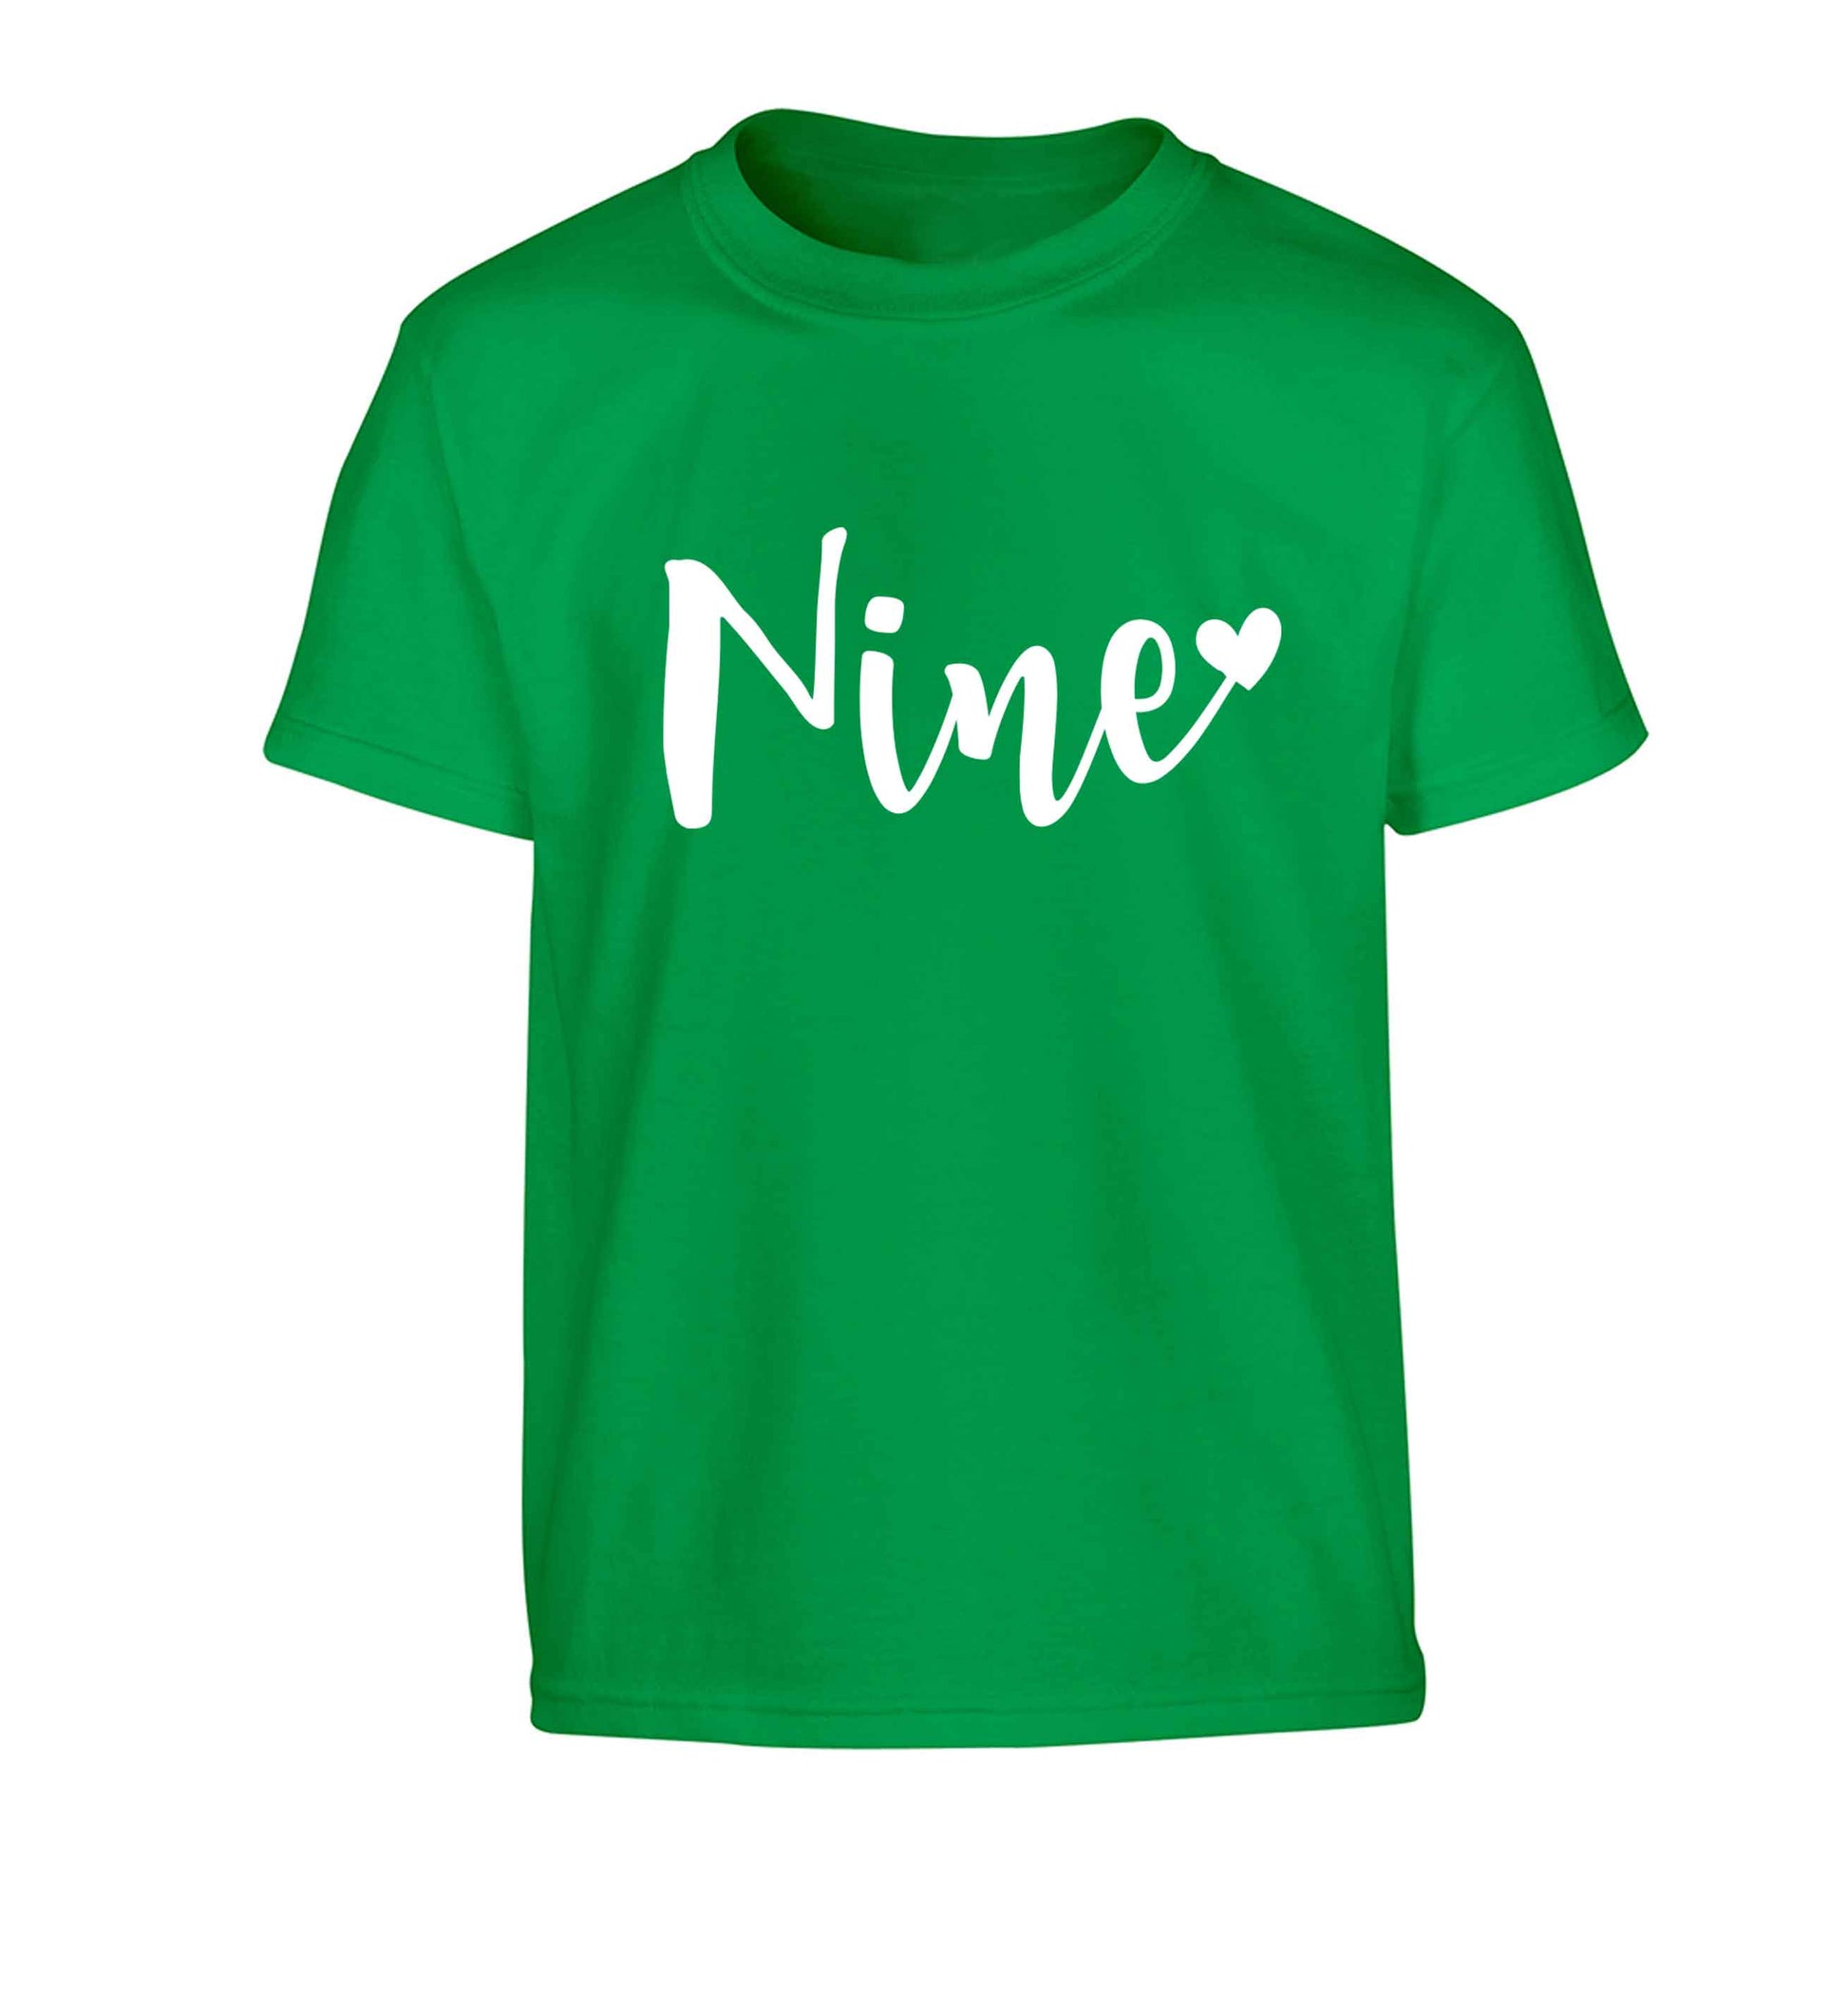 Nine and heart Children's green Tshirt 12-13 Years